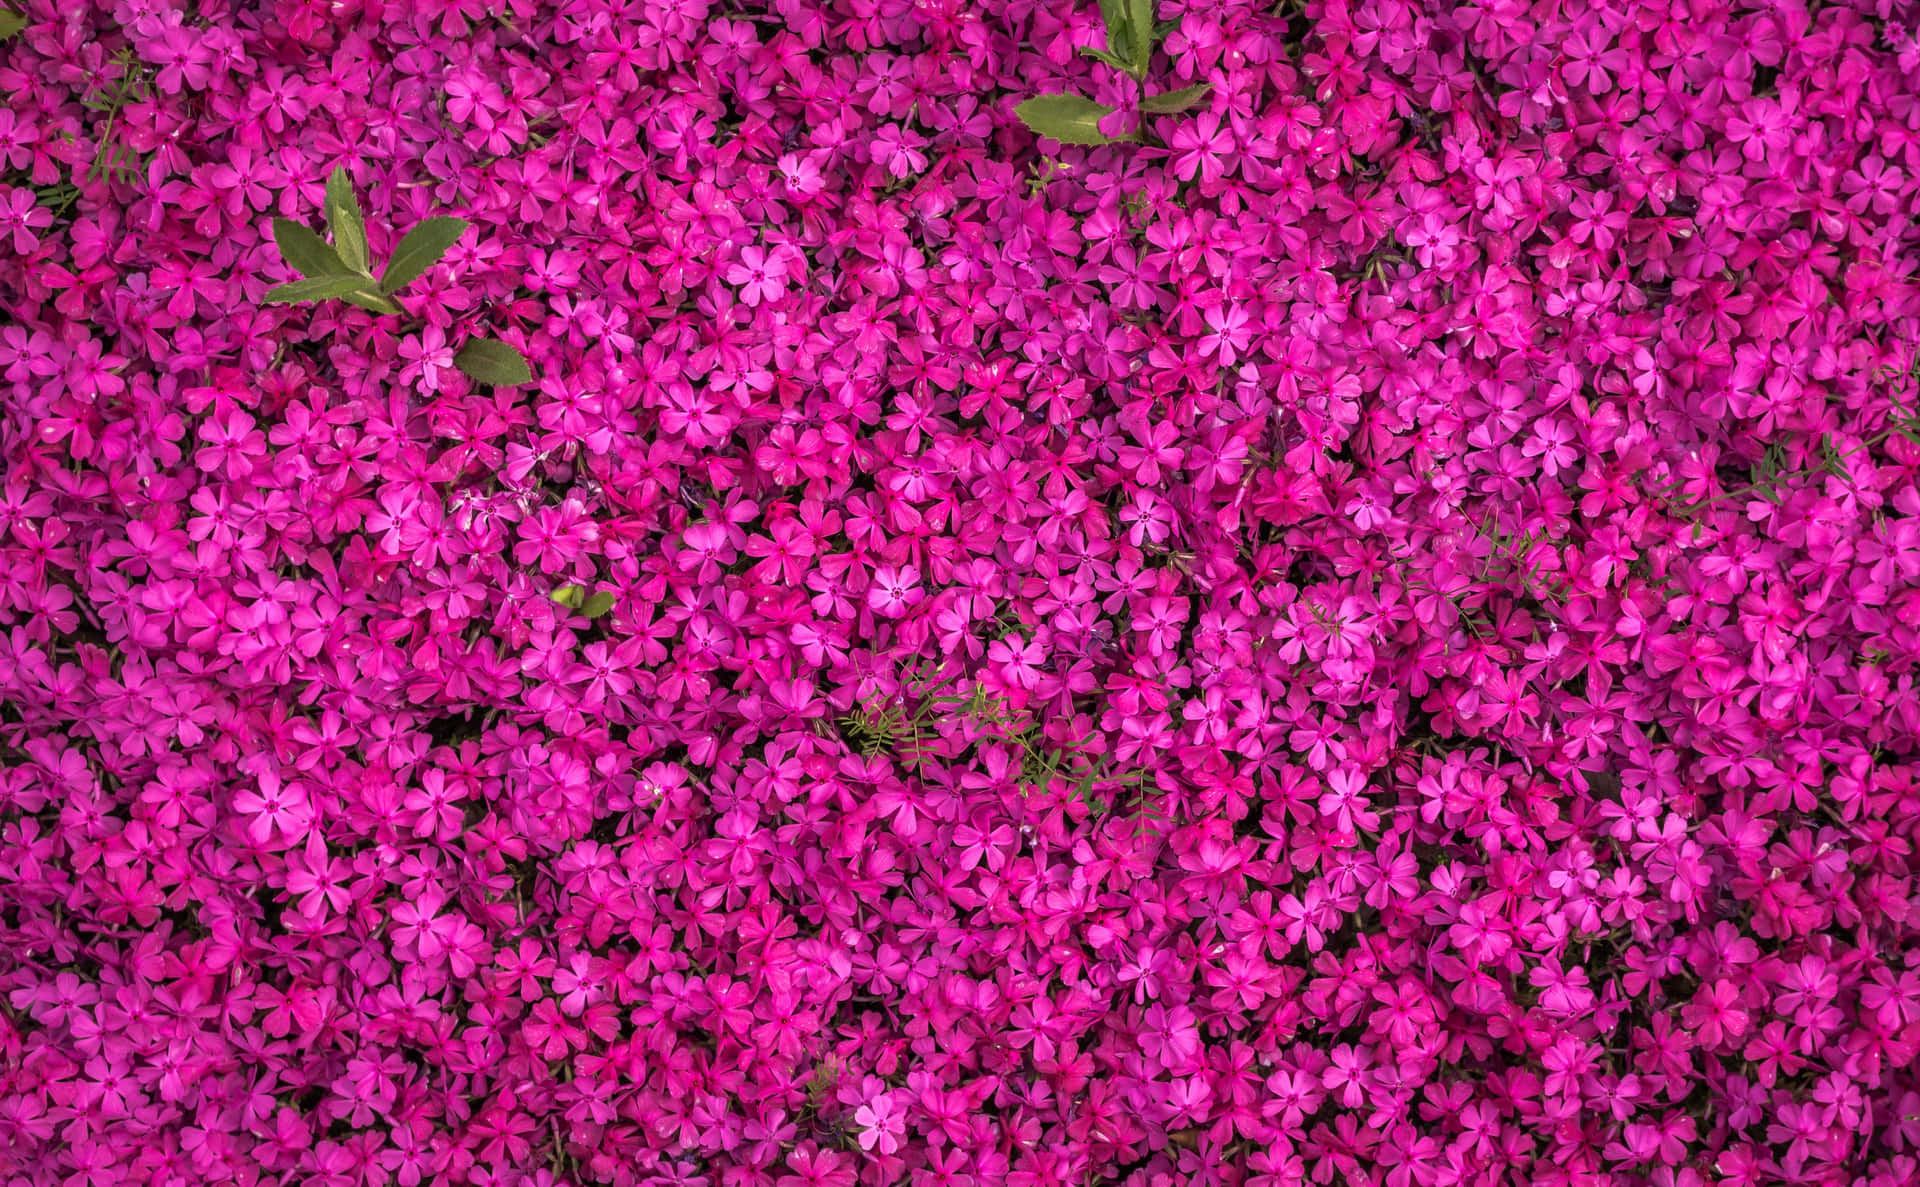 4kbakgrundsbild Med Djupa Magentafärgade Blommor.